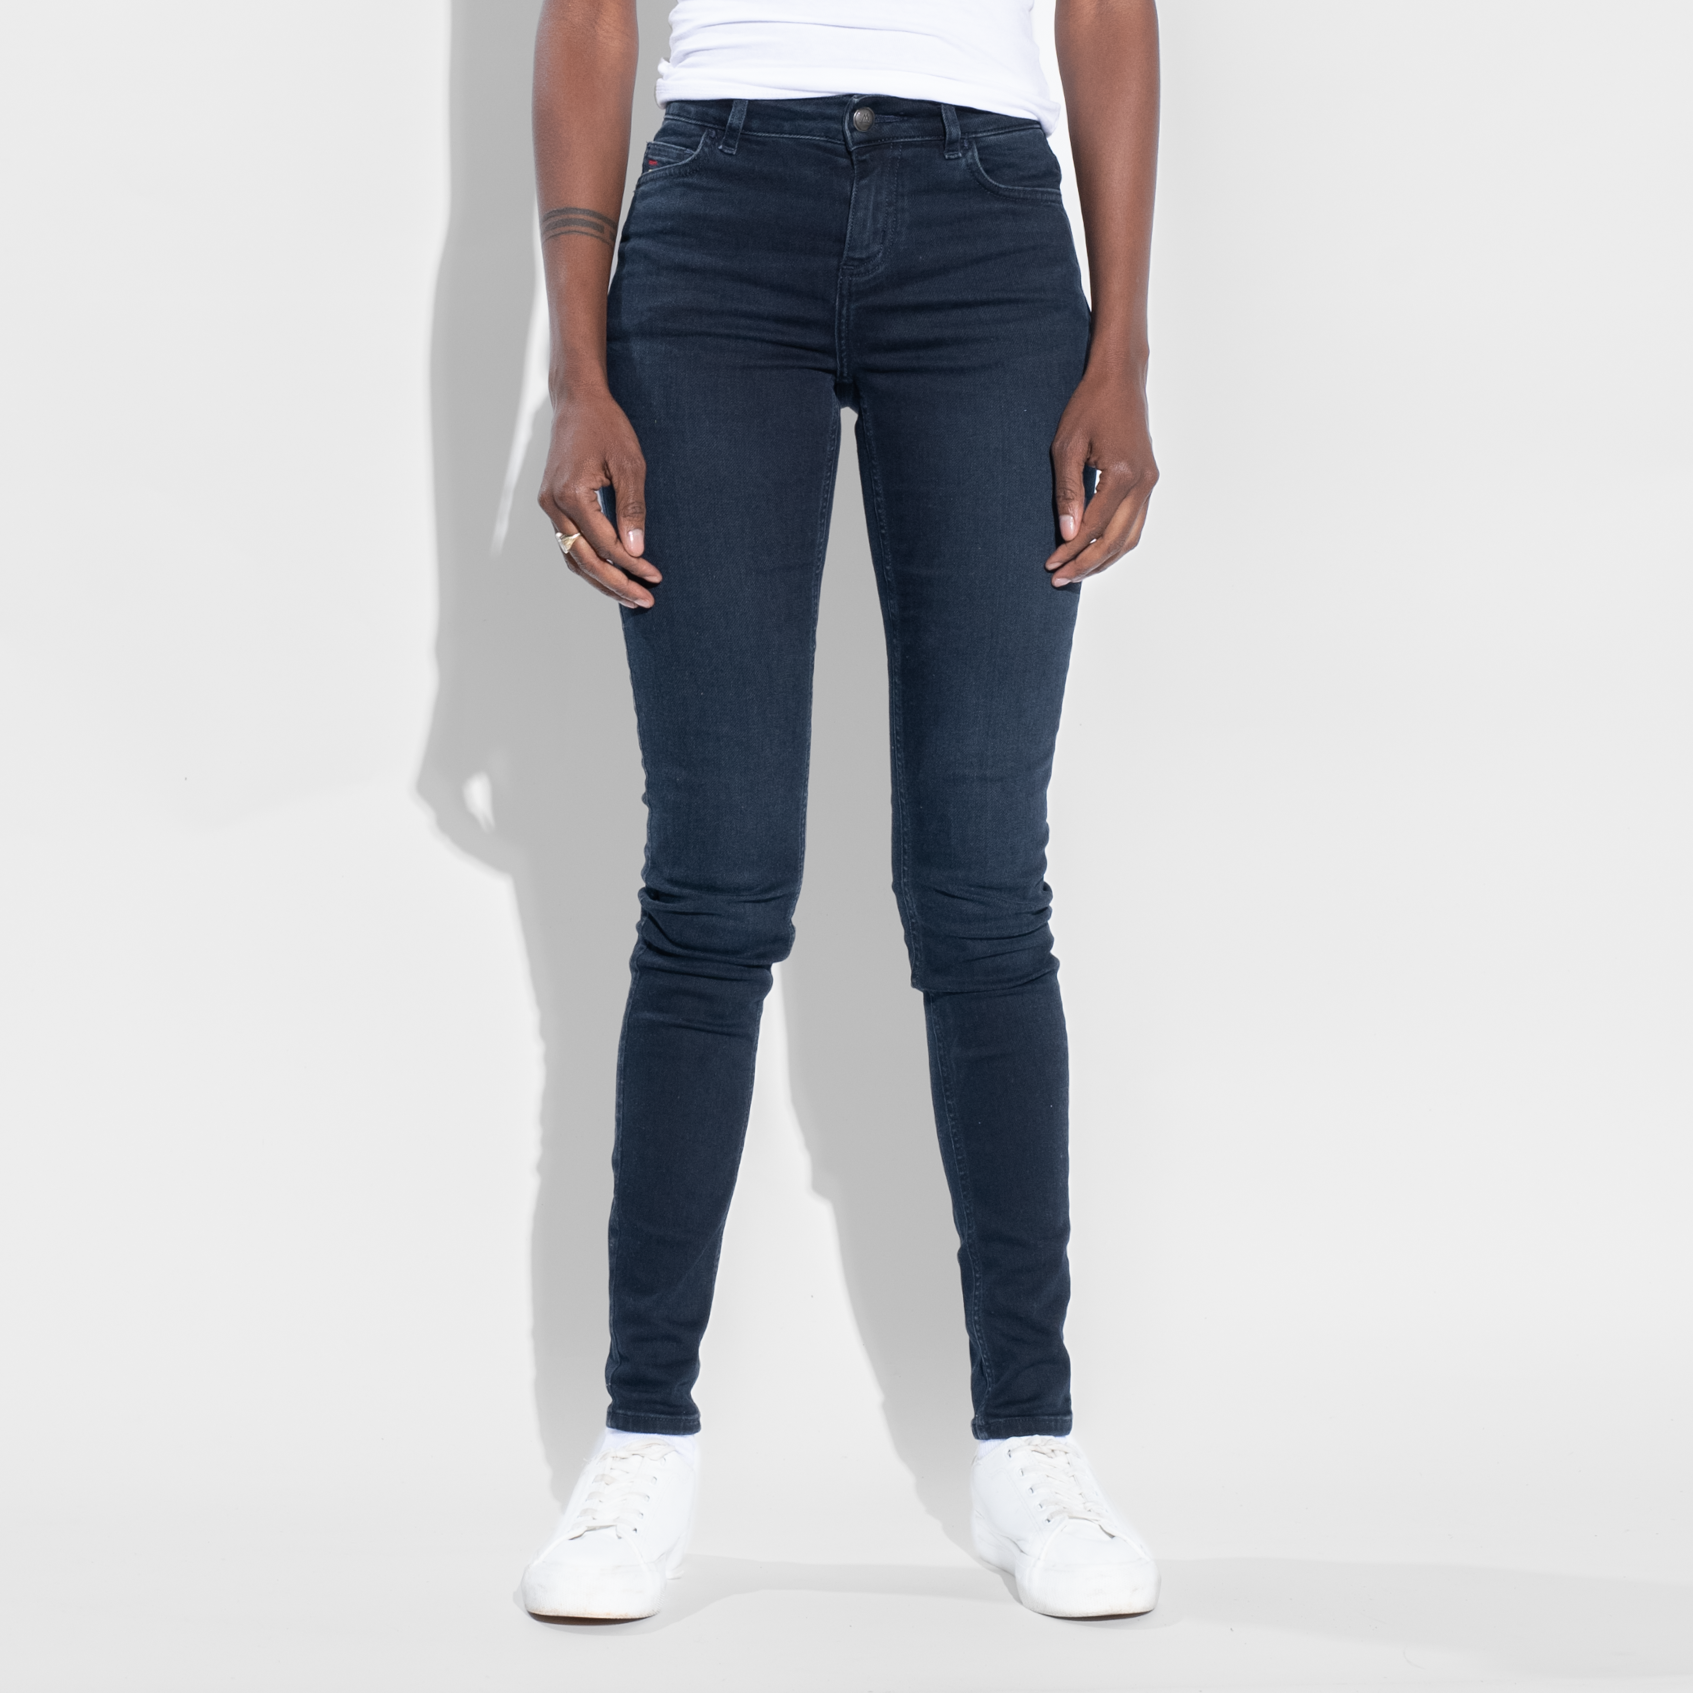 Ladies Skinny Royal Takalani Jeans | TSHEPO